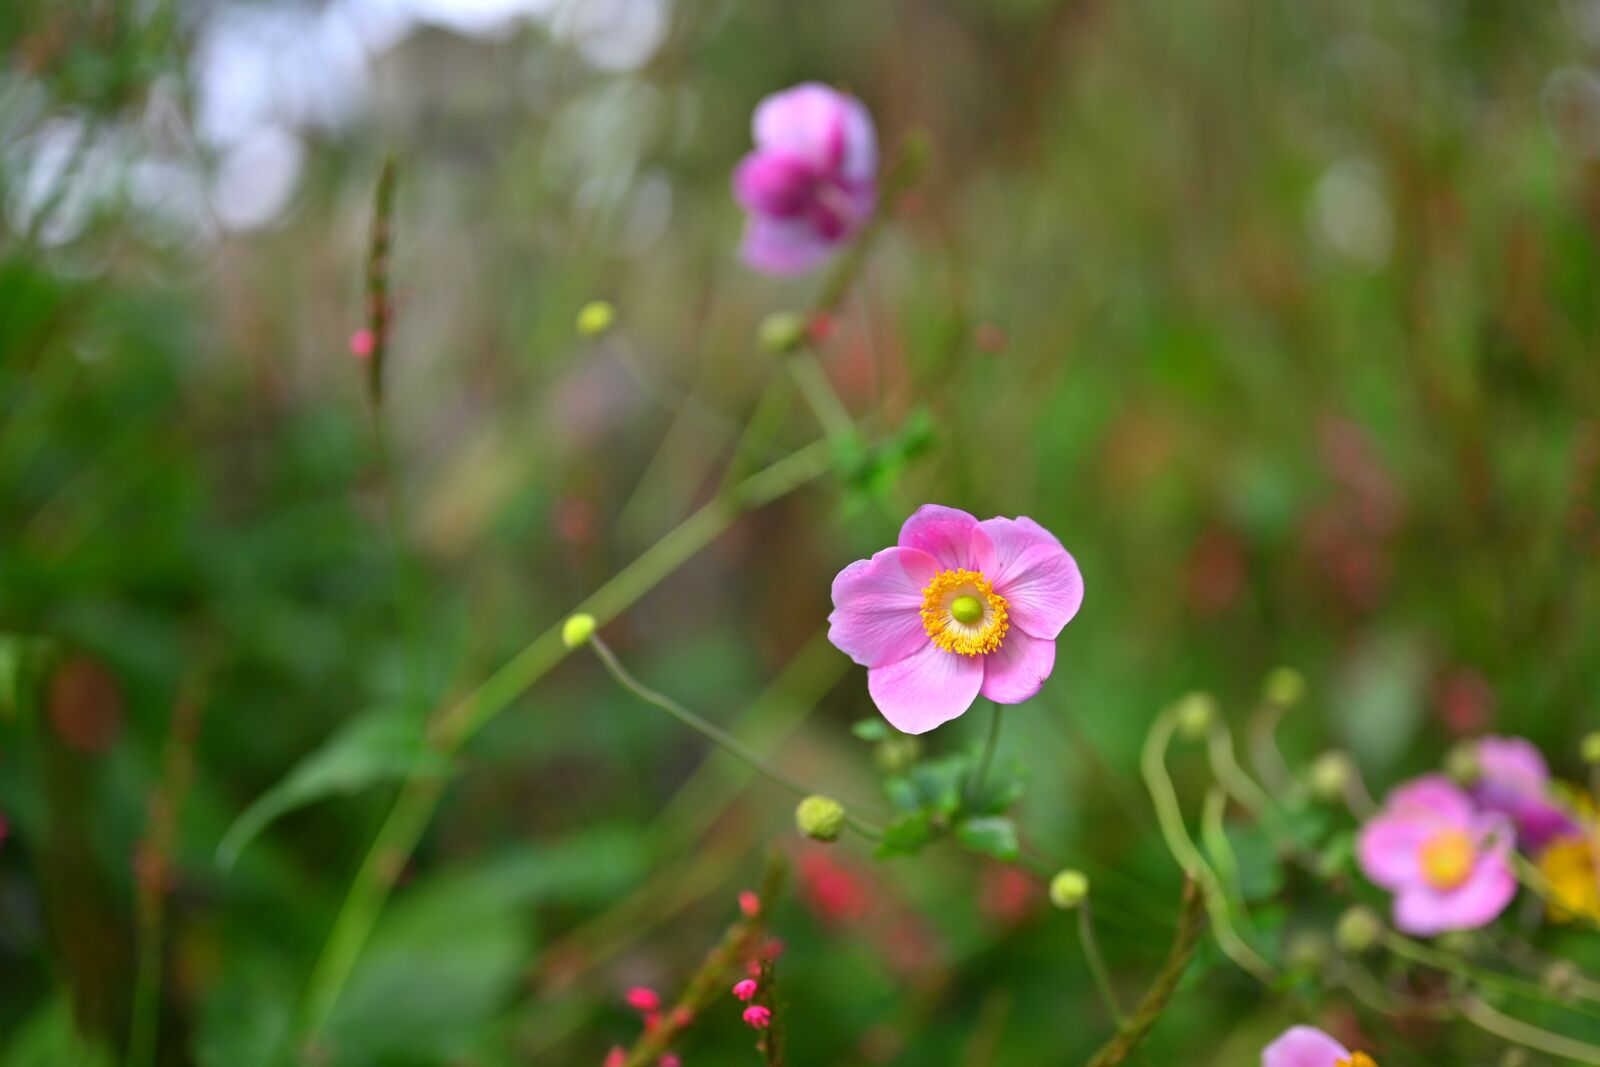 Nikon Nikkor Z 50mm F1.8 S sample photo. Flower power, flower, summer photography